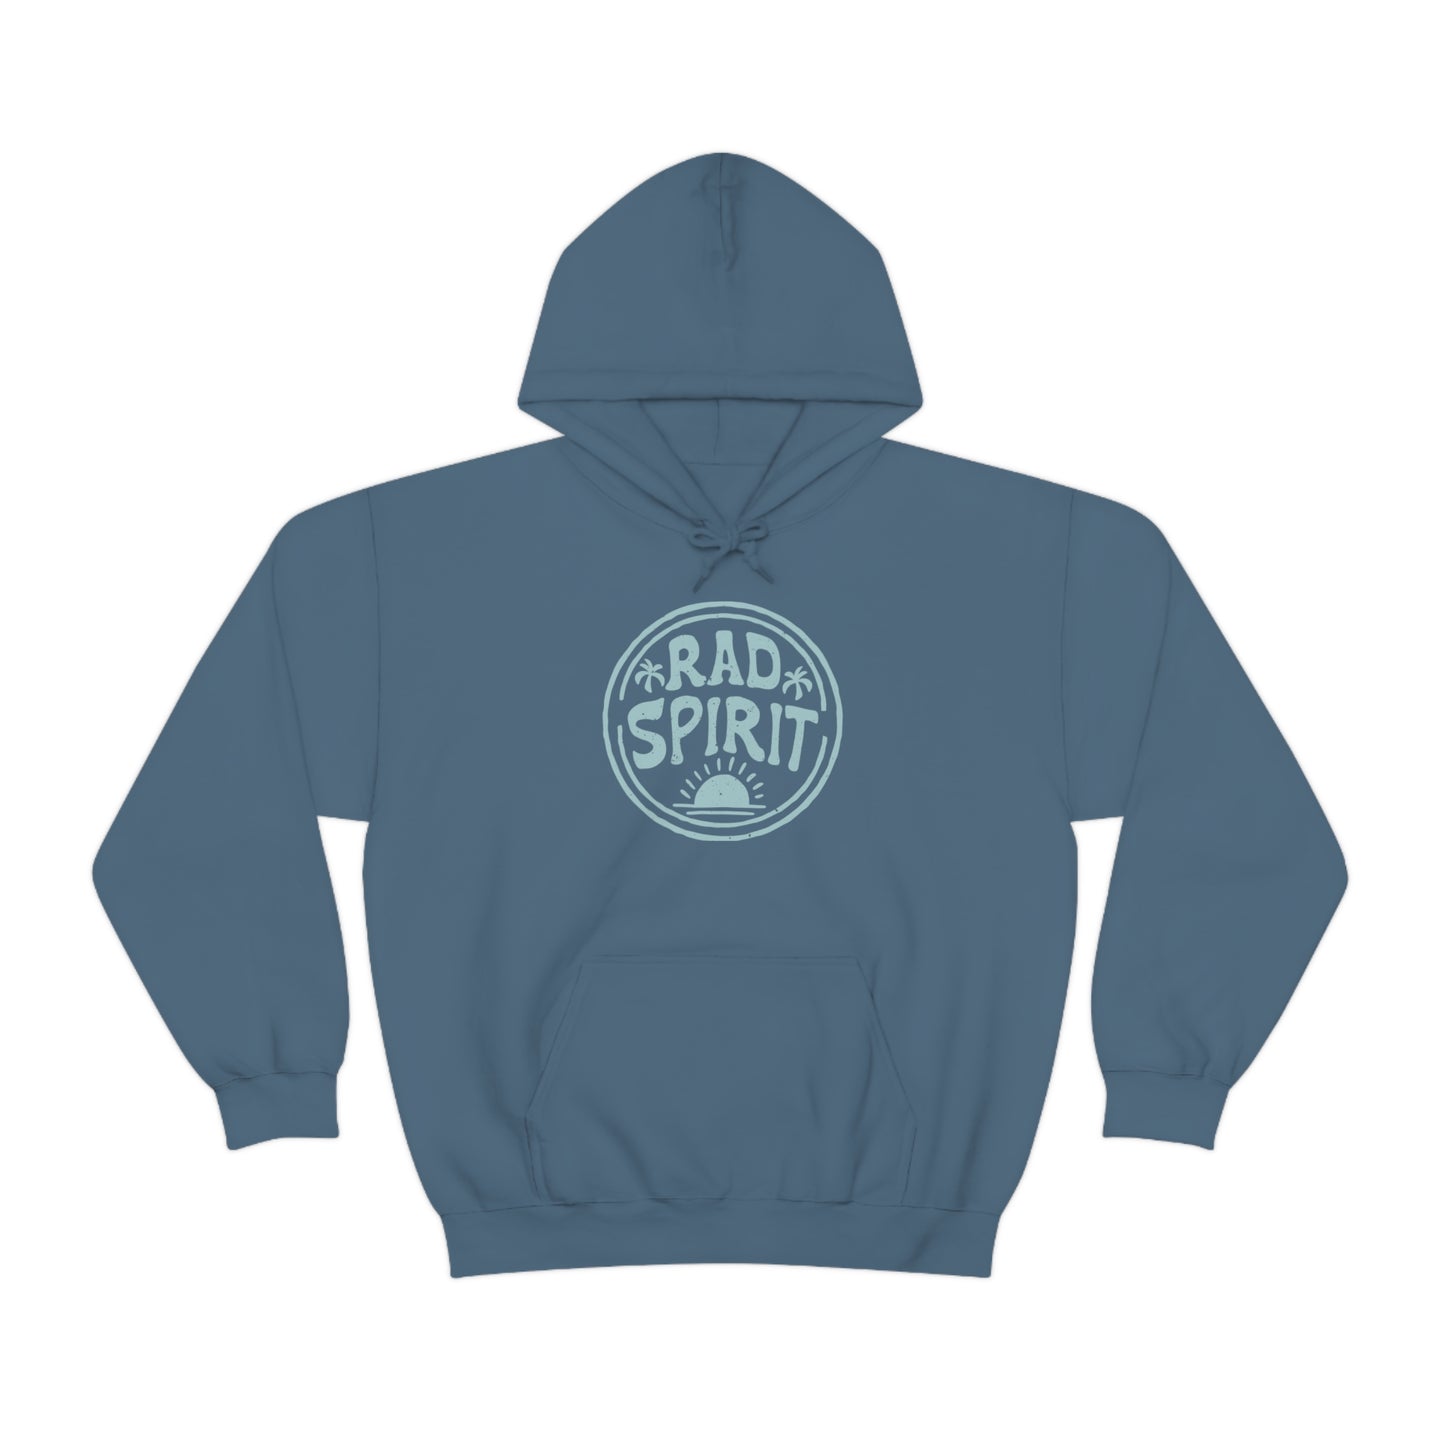 "Rad Spirit" Unisex Hooded Sweatshirt